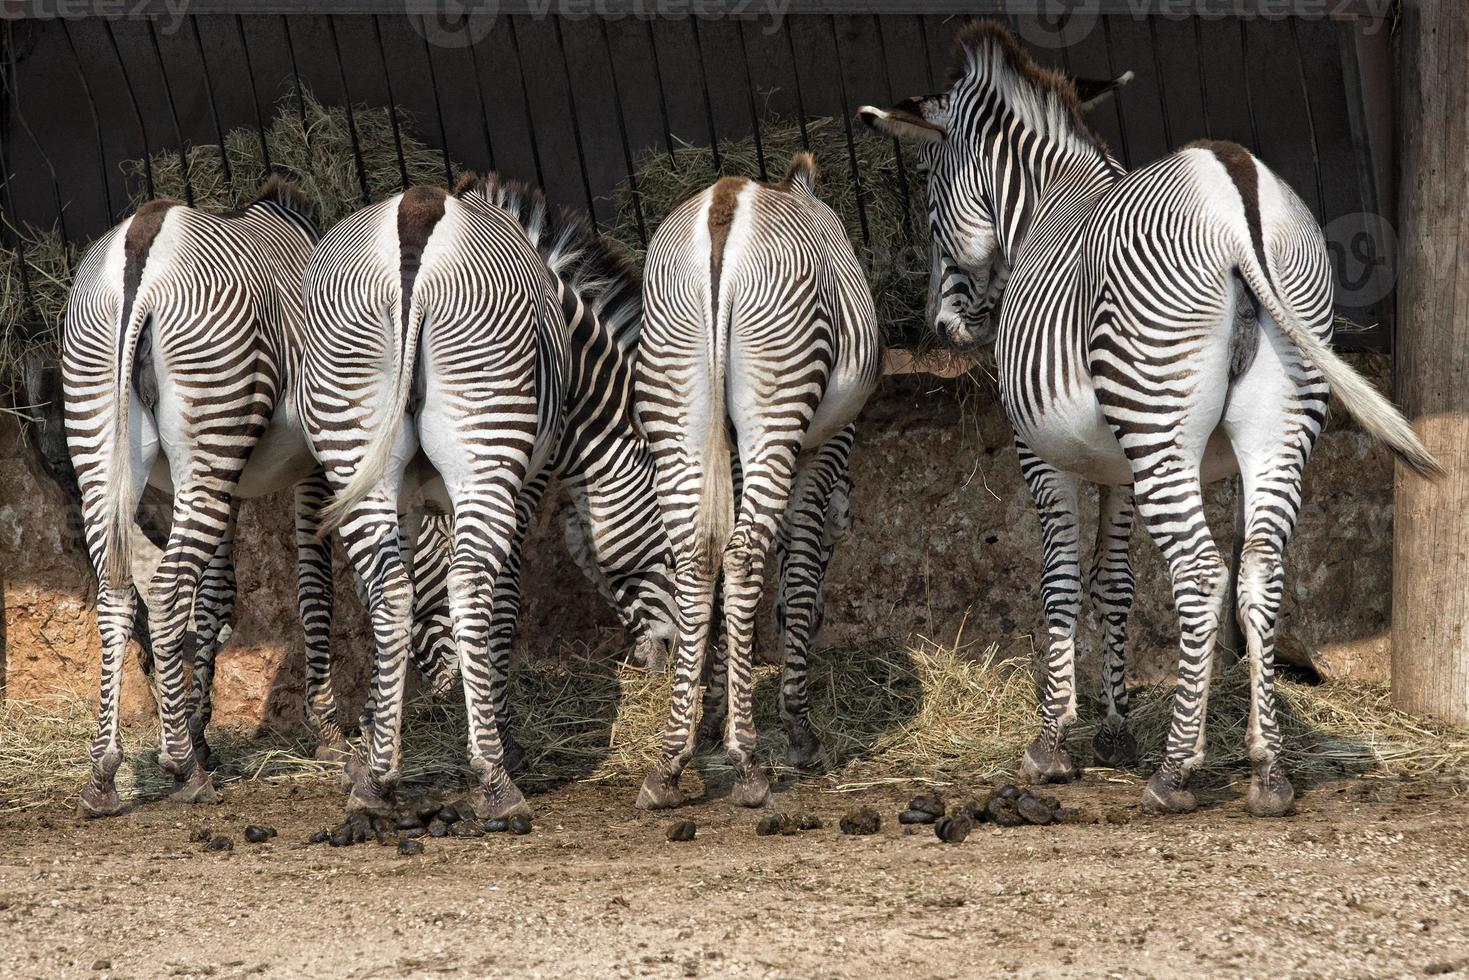 Zebras in the zoo photo